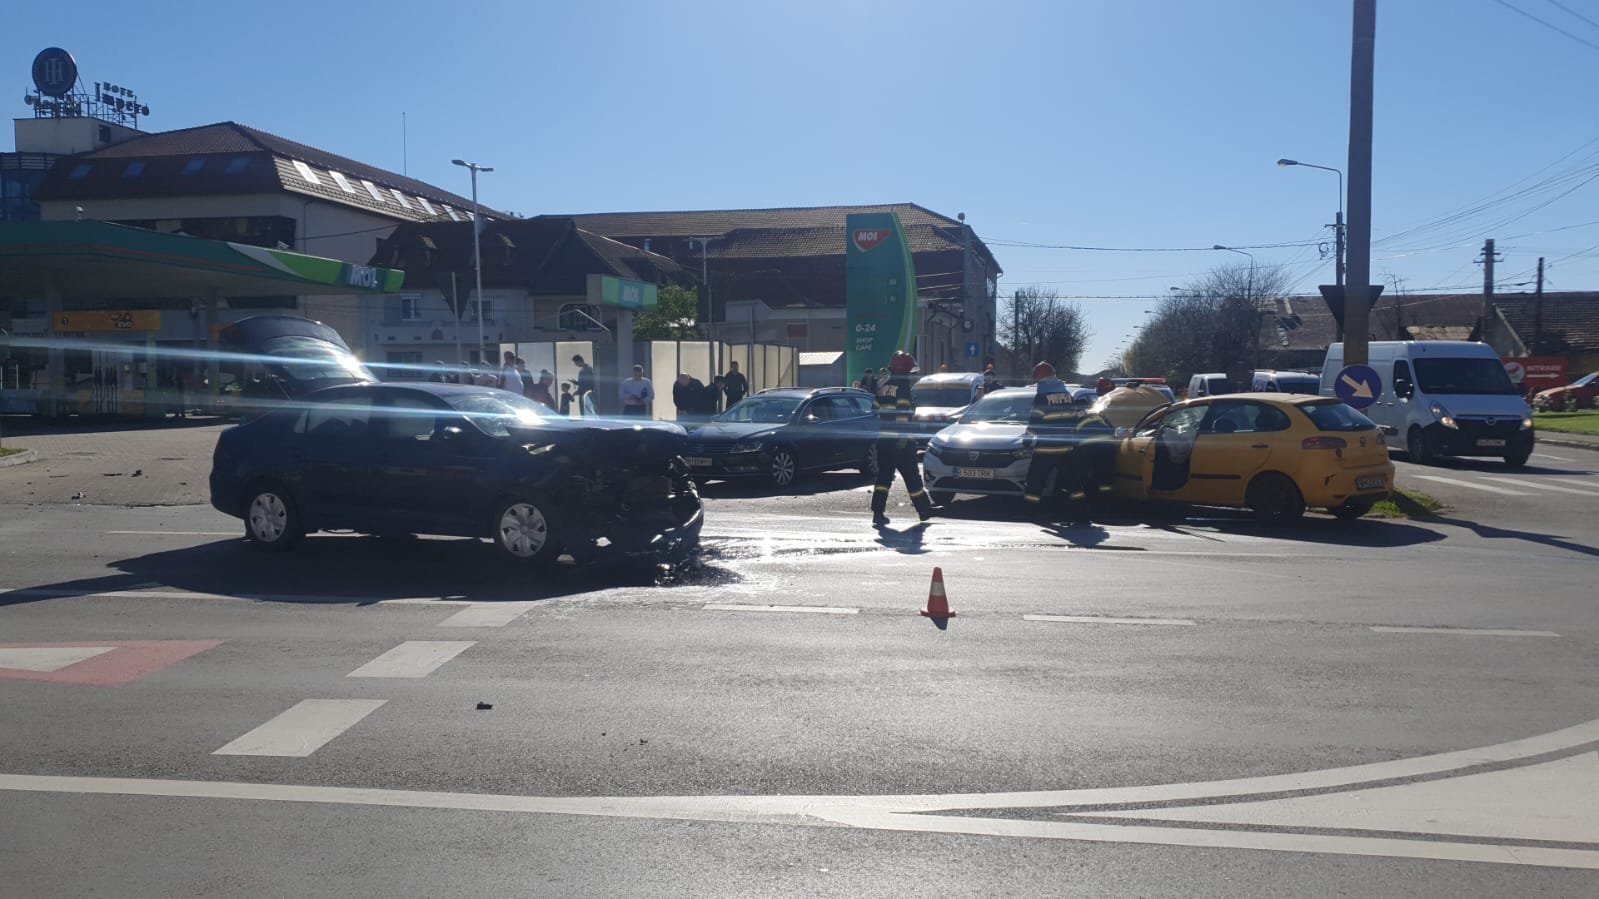 FOTO: Accidente pe Bulevardele Dacia și Decebal 13.04.2022